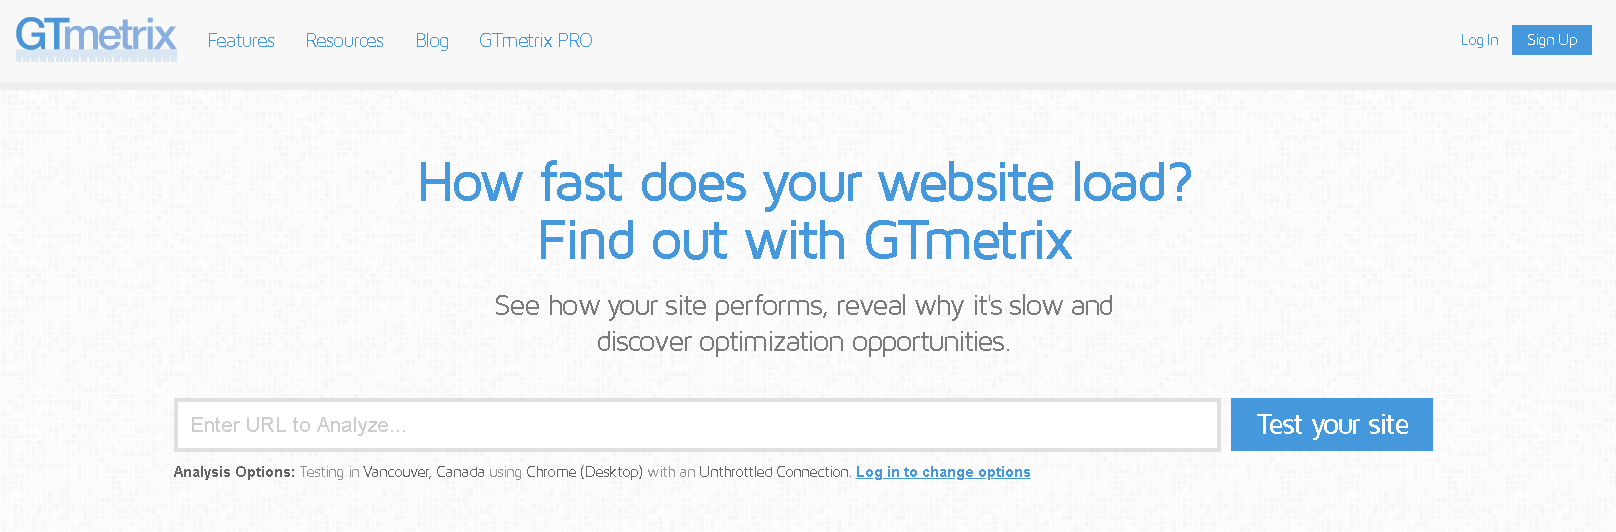 Gtmetrix landing page